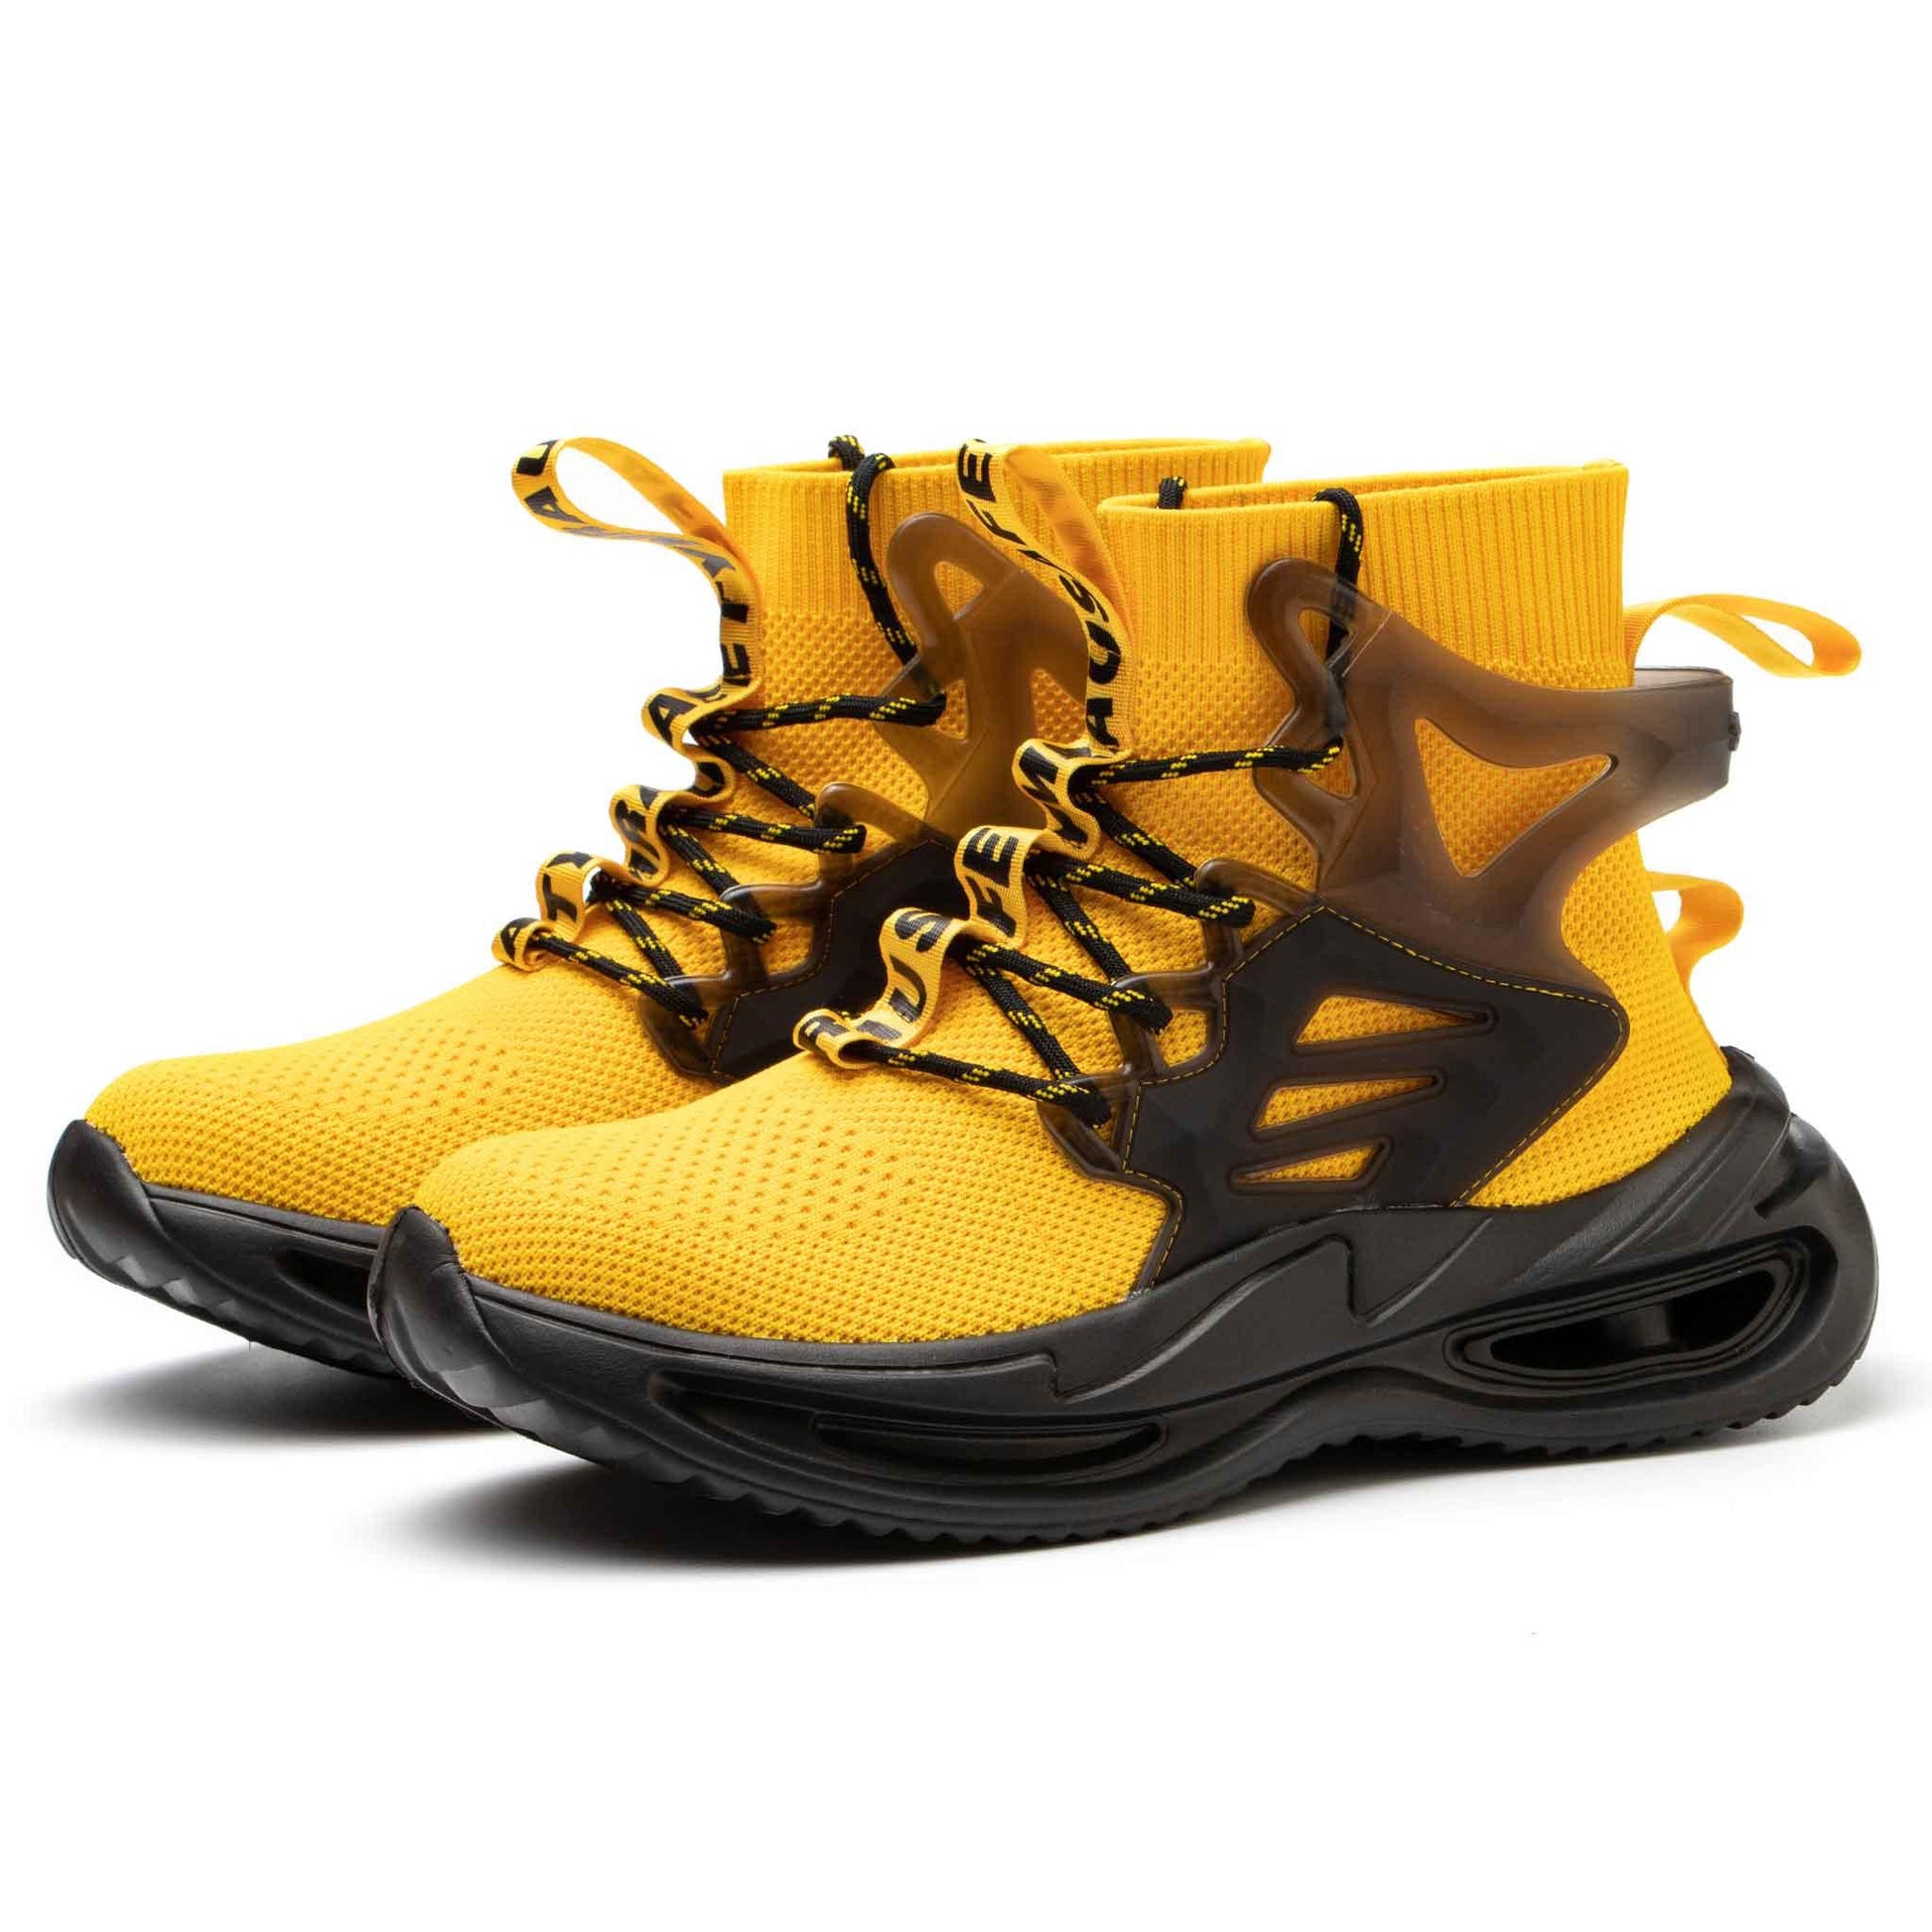 Men's Steel Toe Work Boots - Lightweight | B223 - USINE PRO Footwear